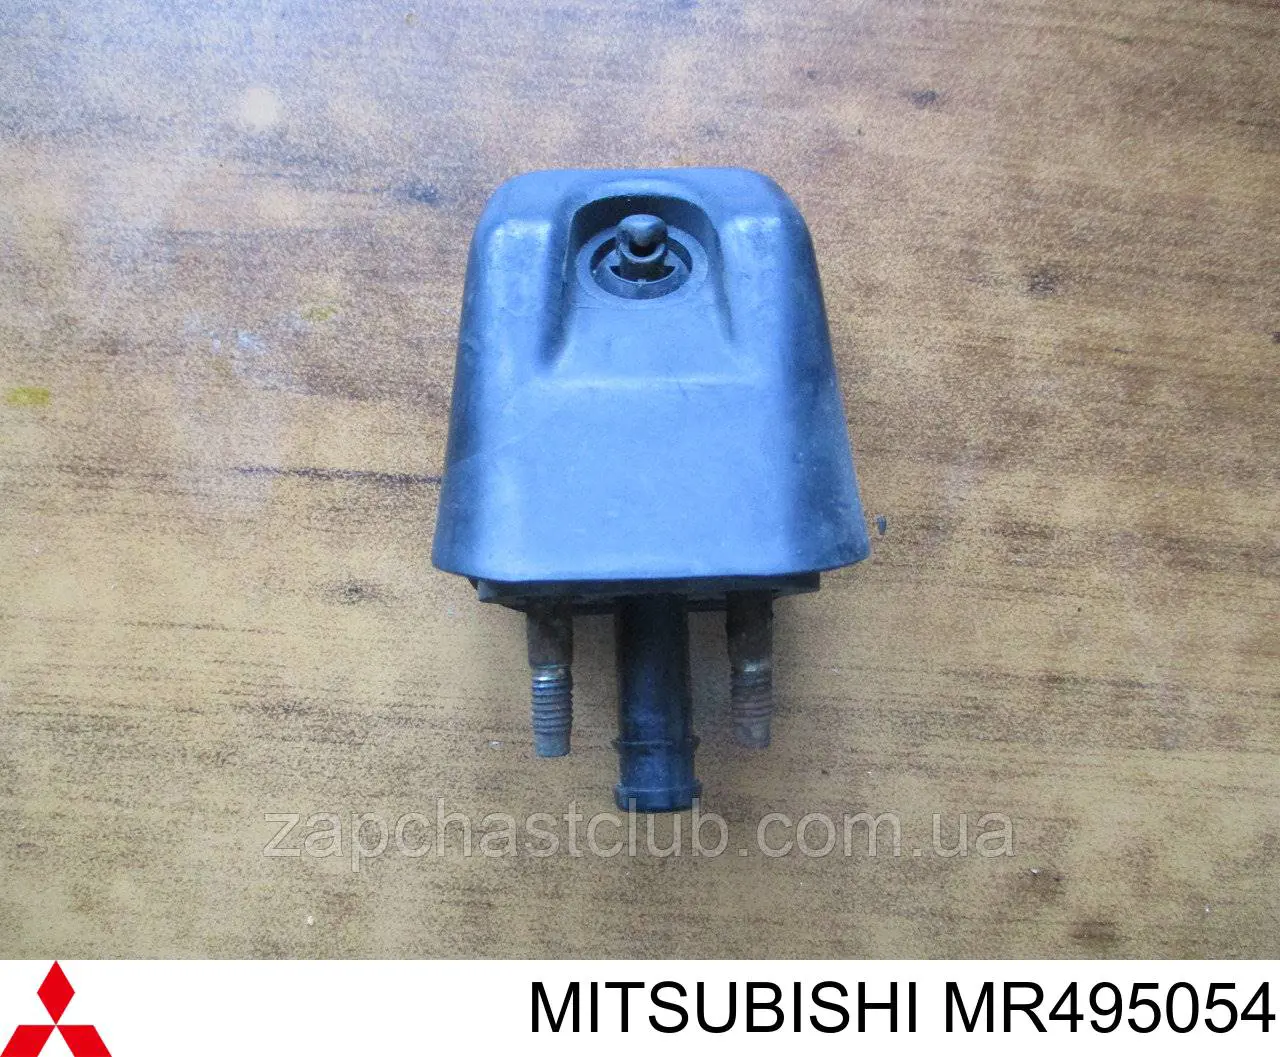 MR495054 Mitsubishi форсунка омывателя фары передней